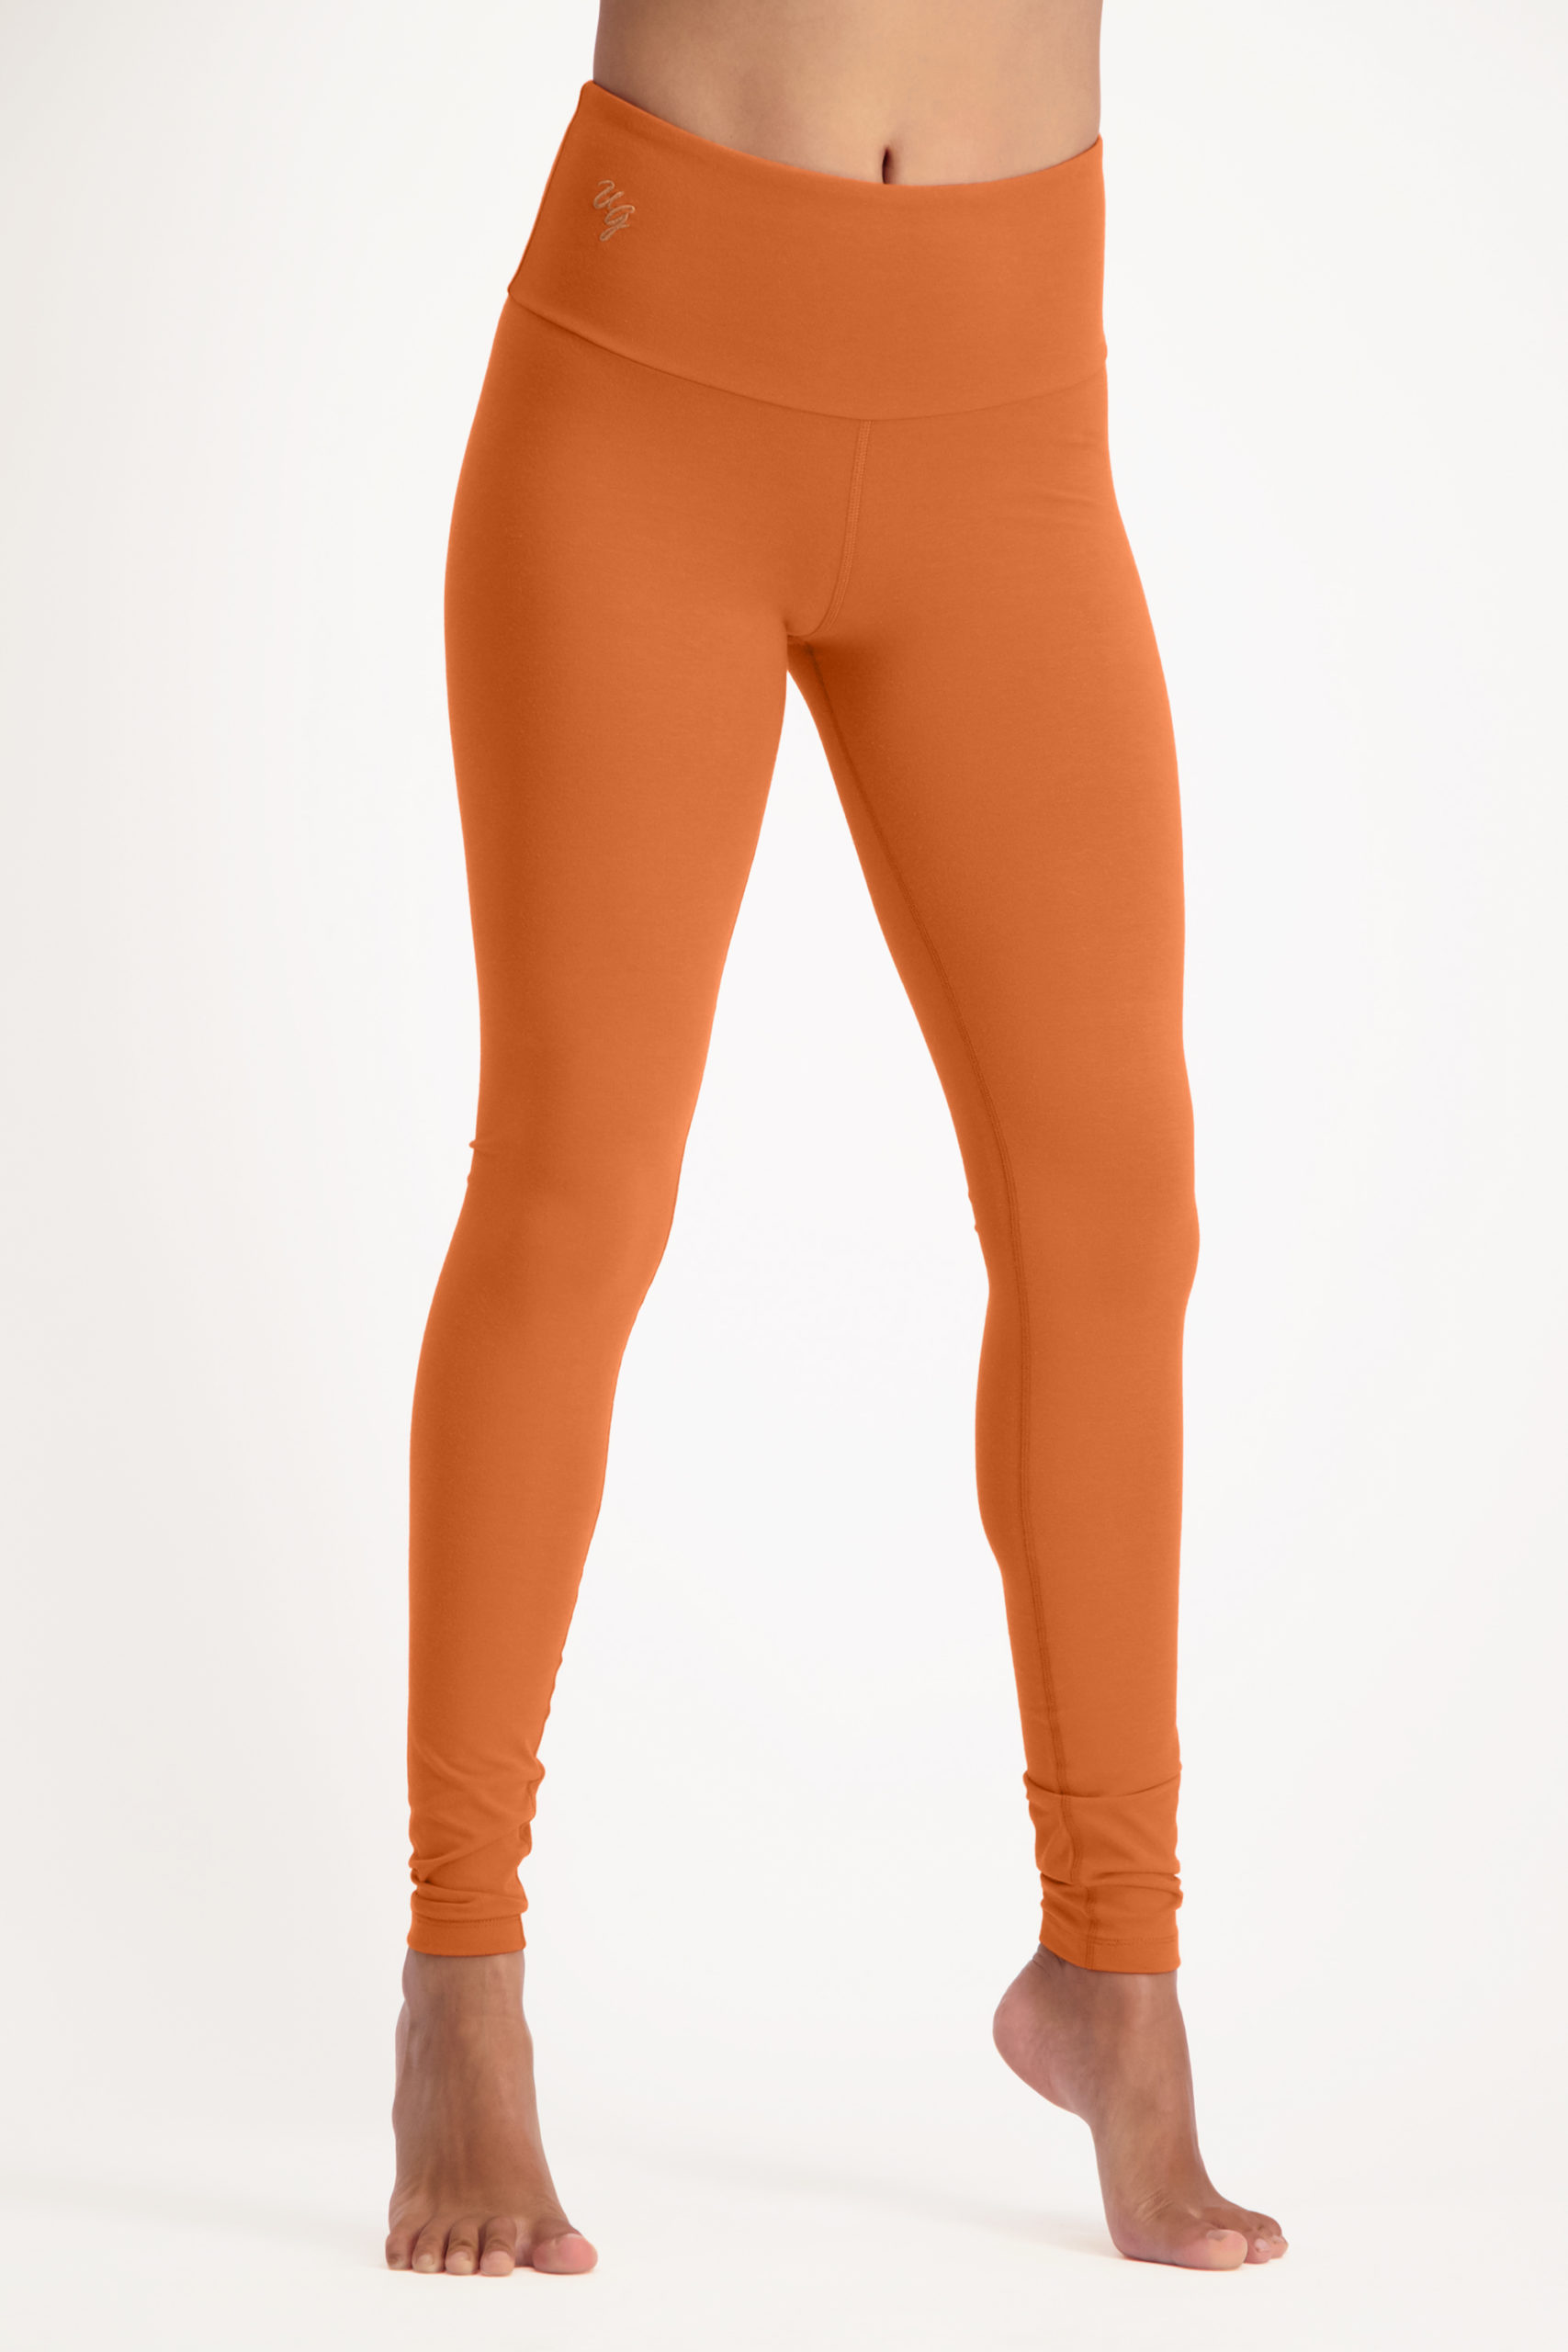 satya leggings-Bombay brown-11125539-front-model_Fullbody_TIFF_1